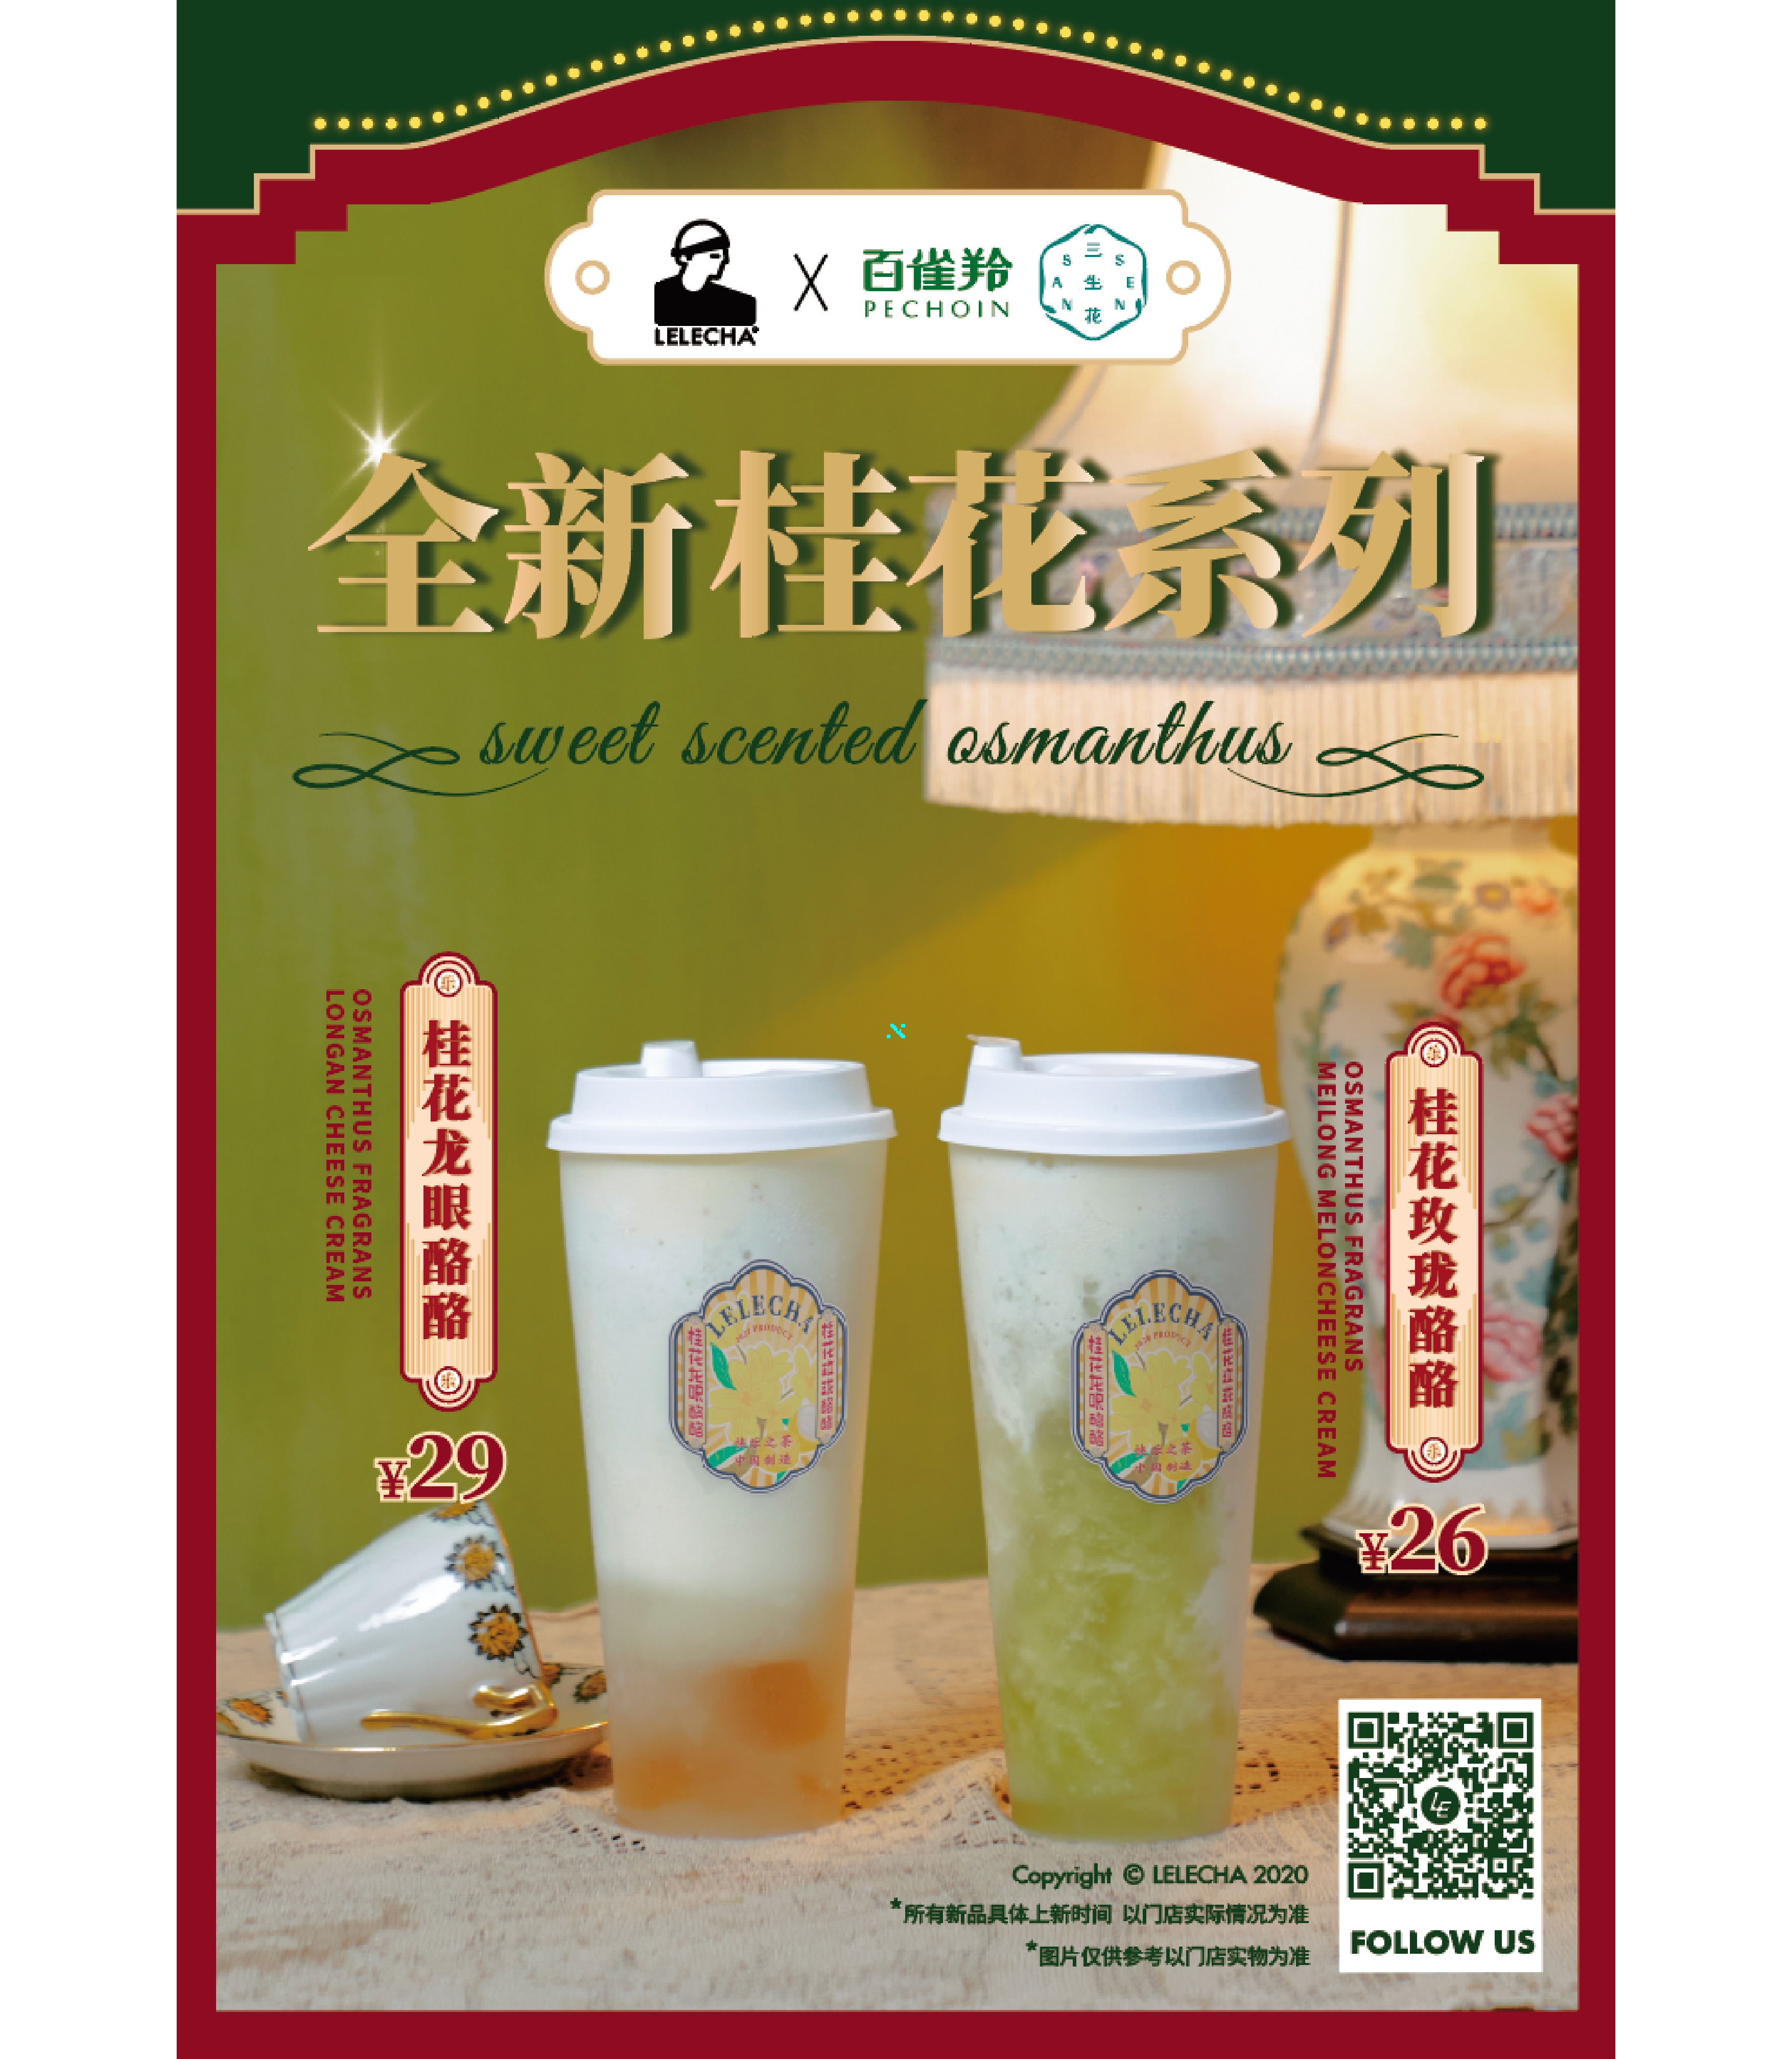 乐乐茶广告语图片